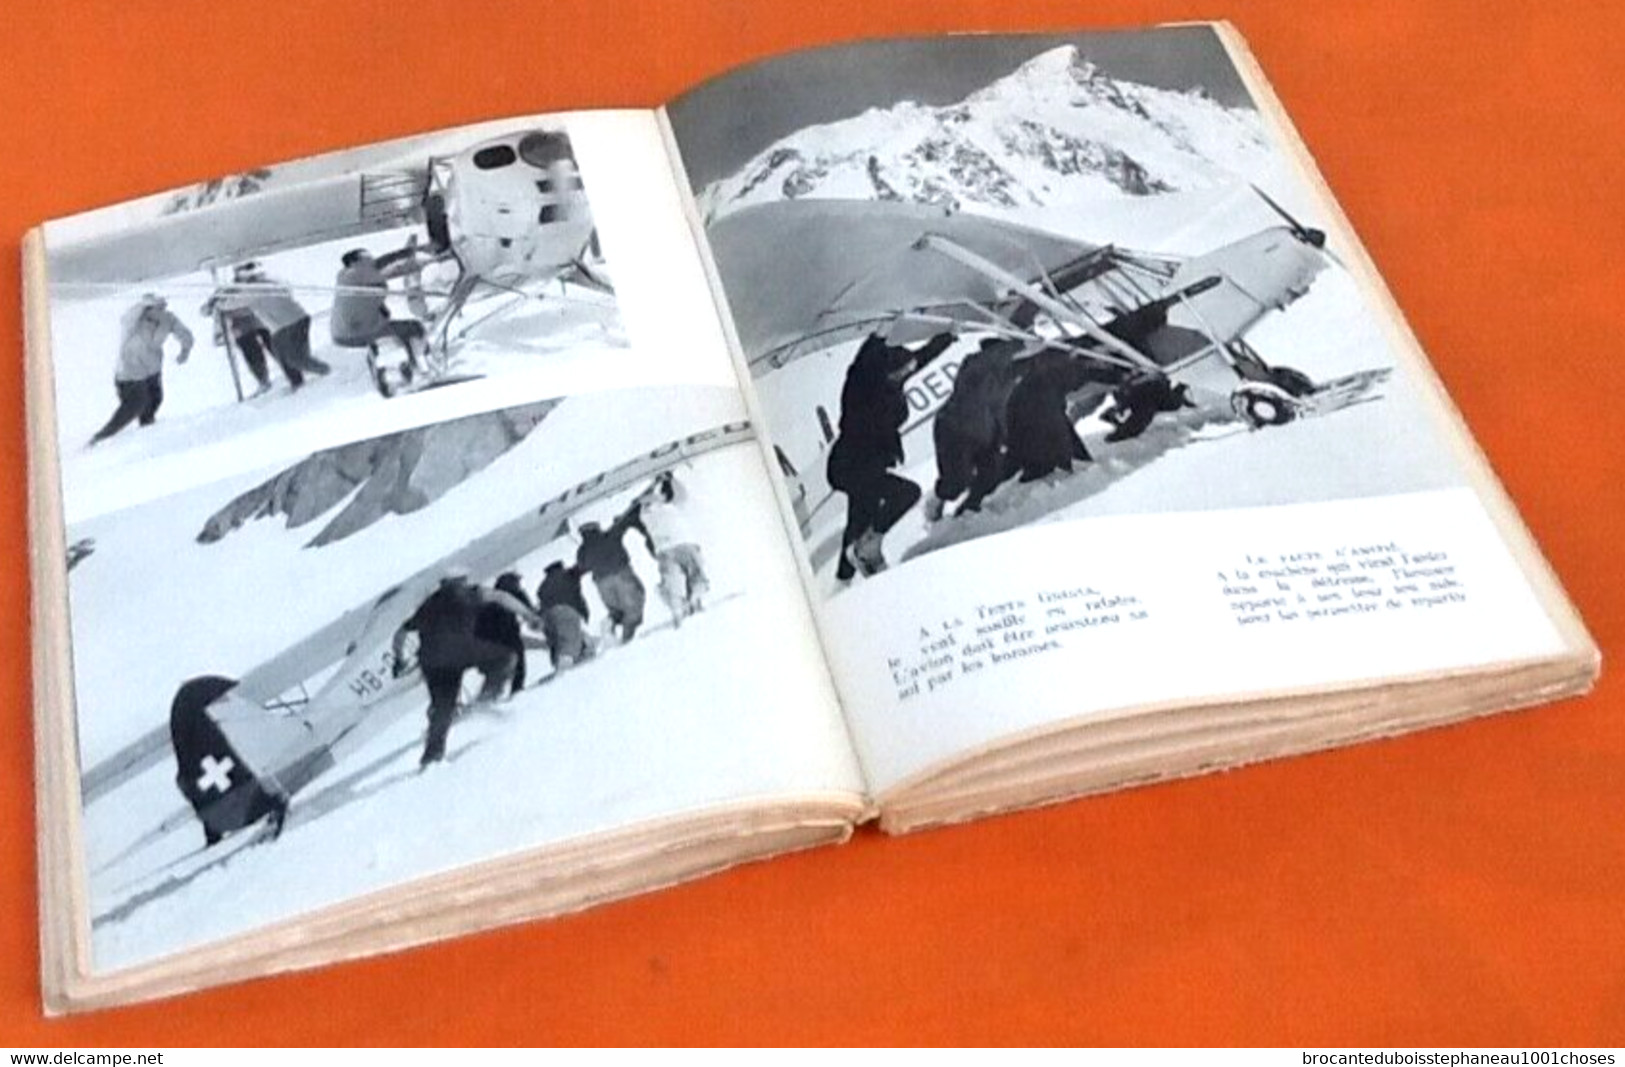 Collection Sempervivum dirigée par Felix Germain Geiger Pilote des Glaciers  (1955)